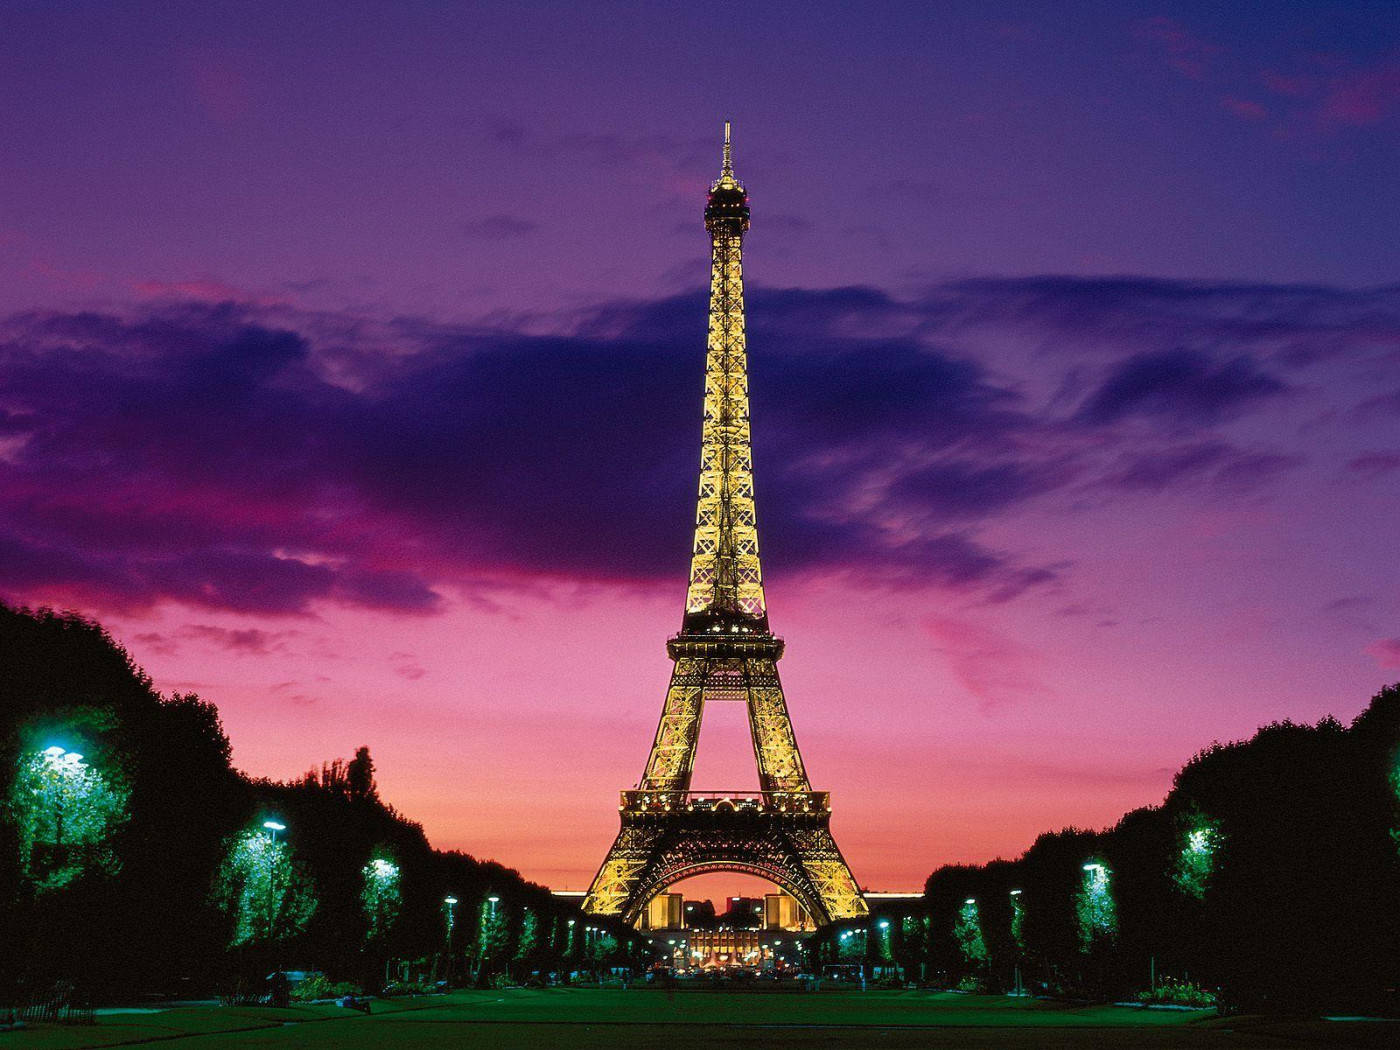 Cieloviola Sopra La Torre Eiffel A Parigi. Sfondo